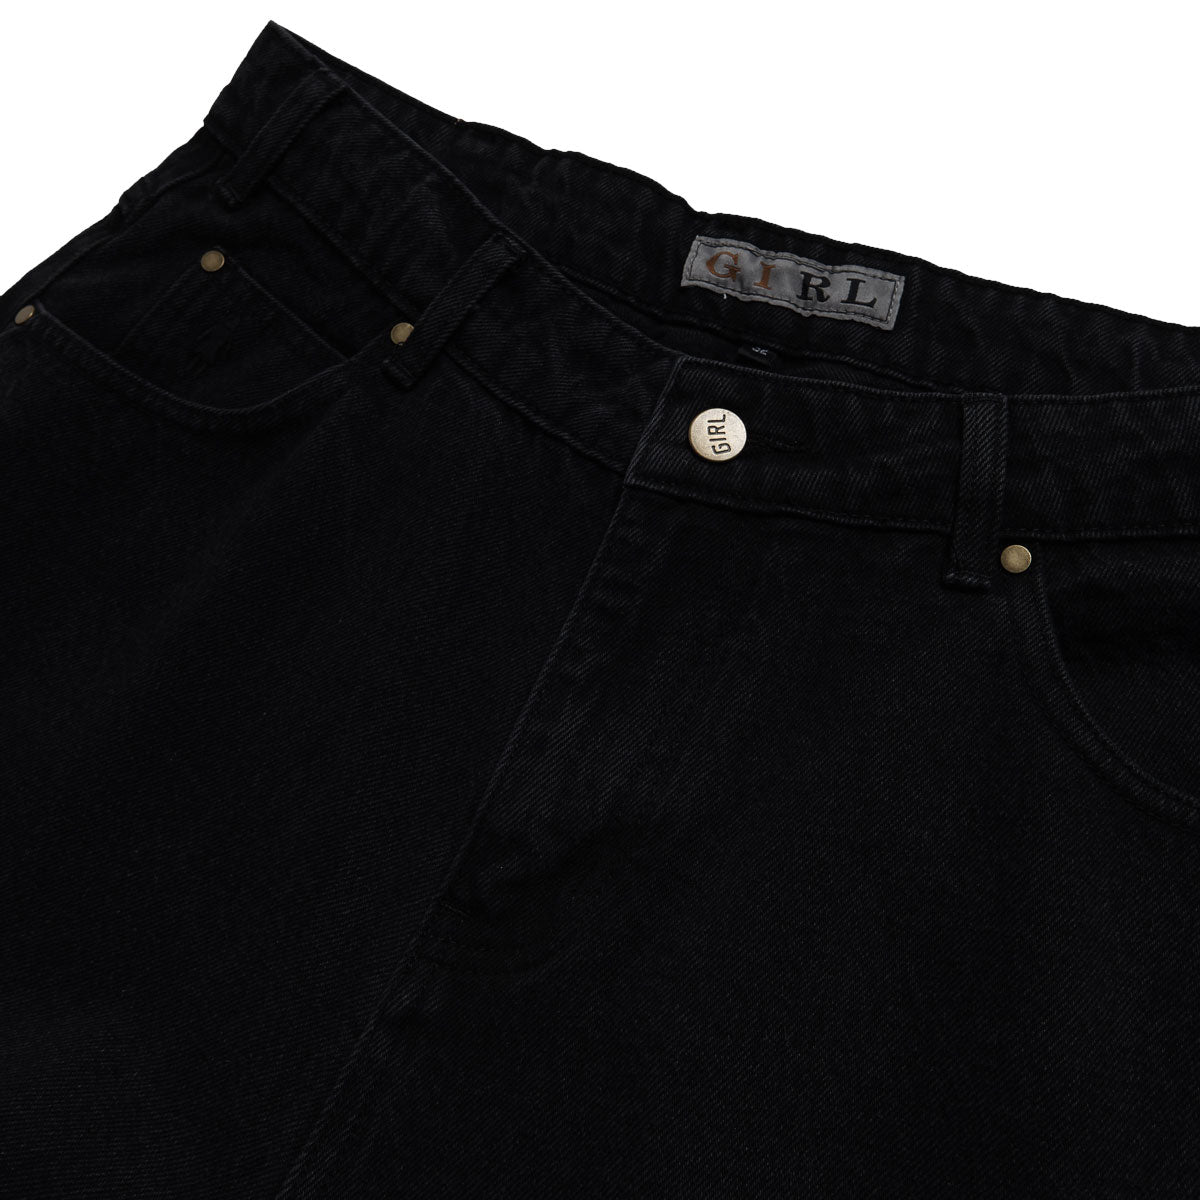 Girl Jeans - Washed Black image 4